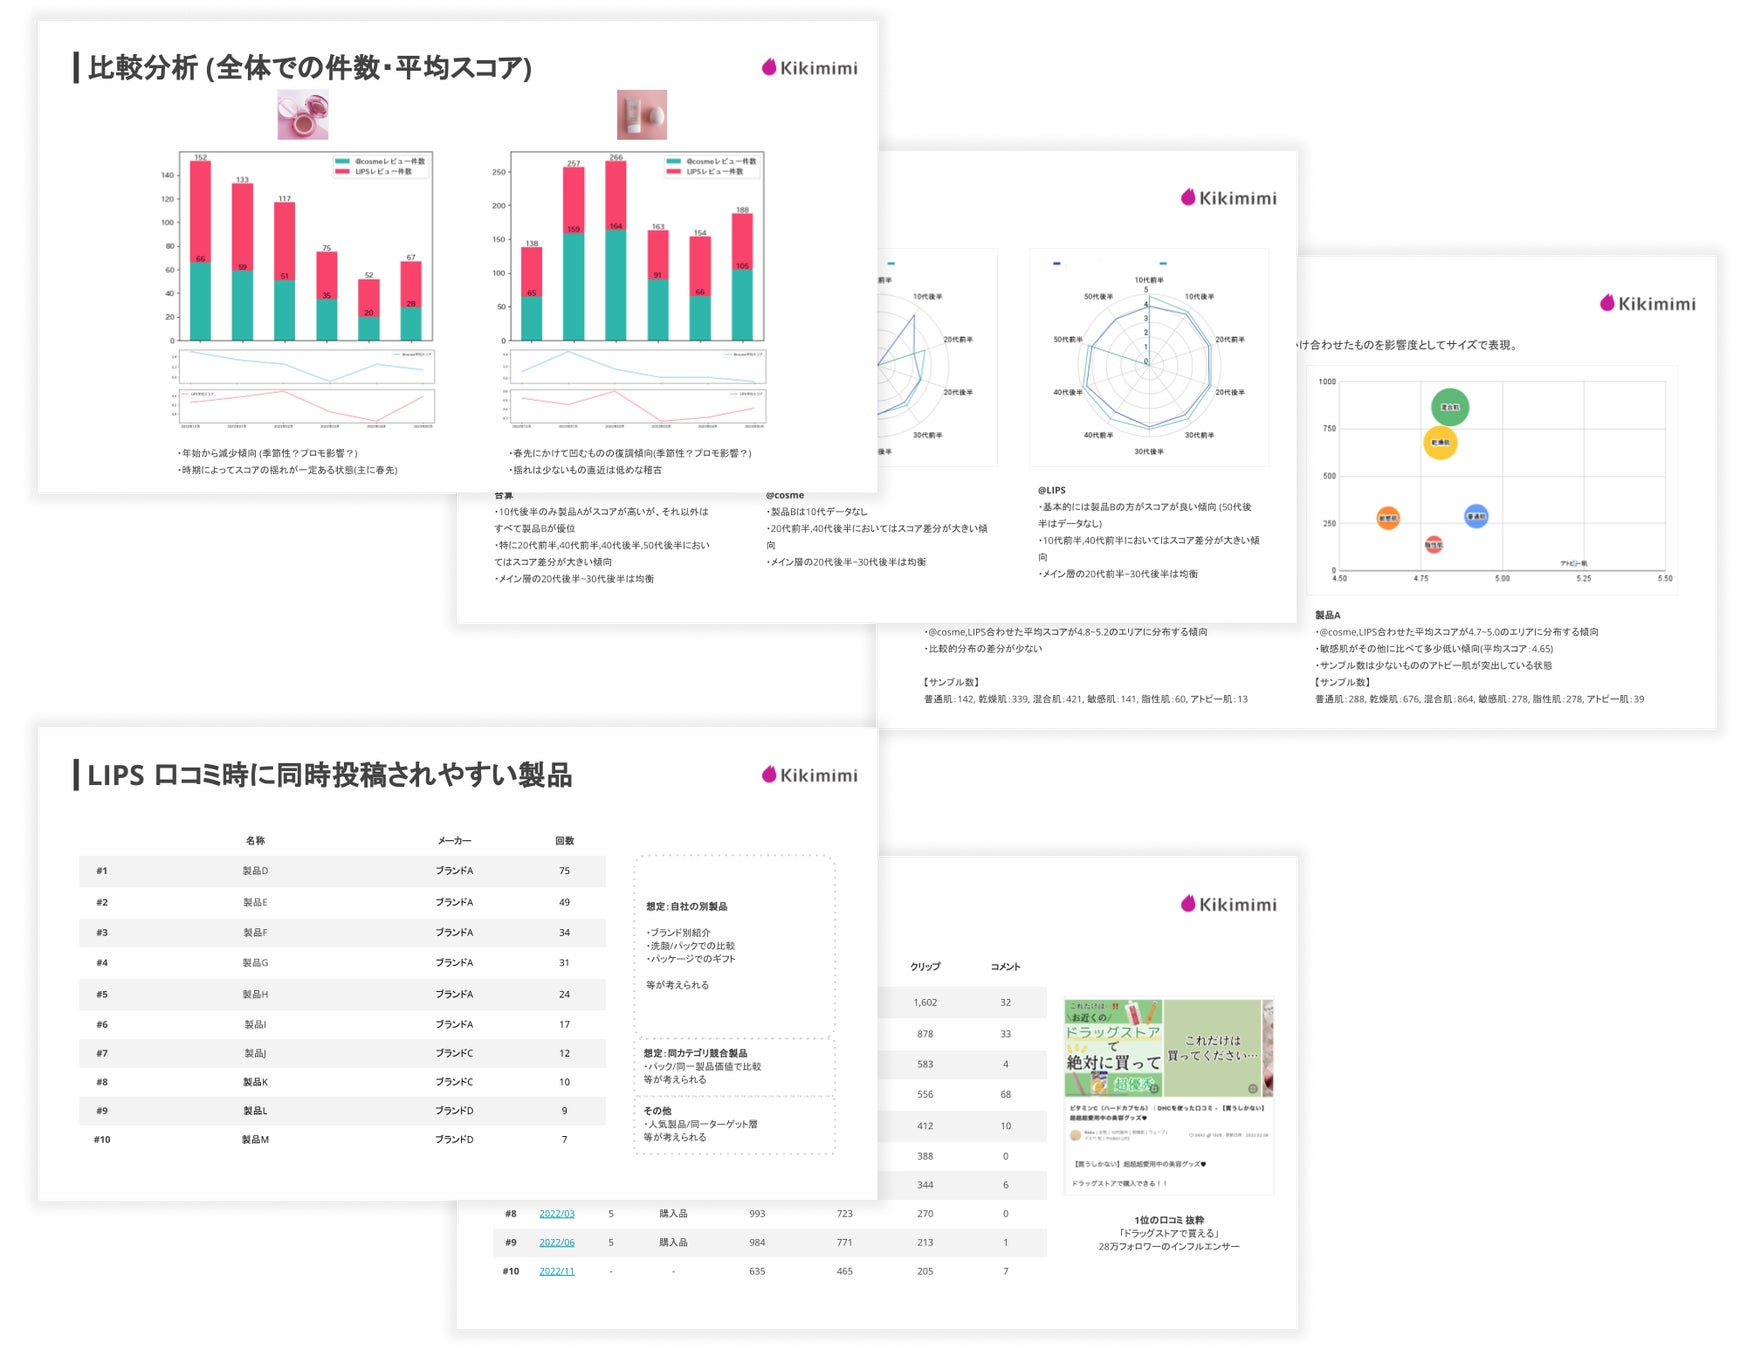 化粧品メーカー向け分析SaaS「Kikimimi」クチコミ分析のサンプルレポートを公開 | 3社限定・30%割引キャンペーンも開催